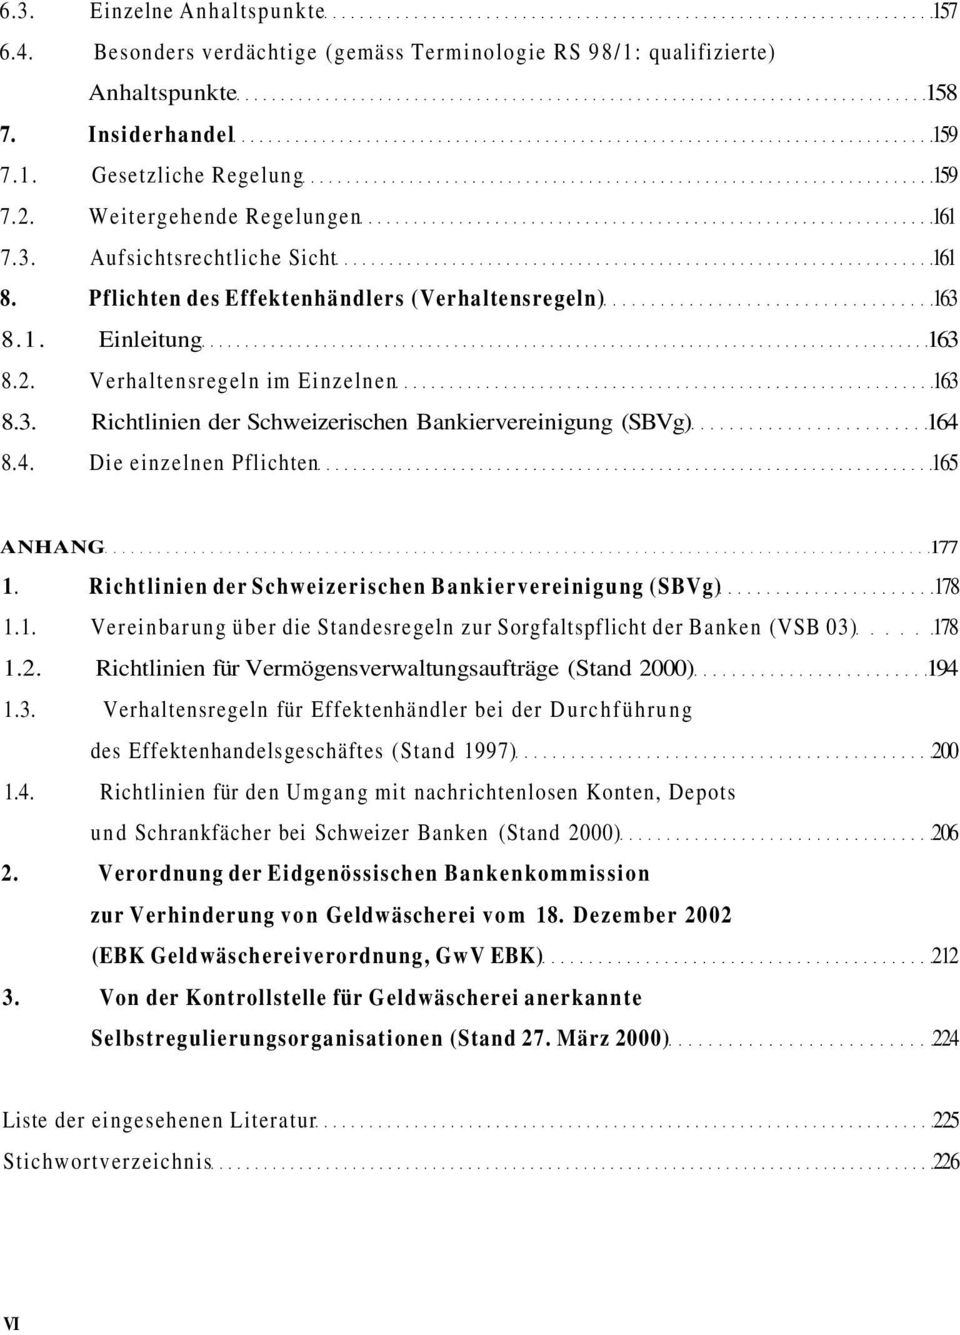 4. Die einzelnen Pflichten 165 ANHANG 177 1. Richtlinien der Schweizerischen Bankiervereinigung (SBVg) 178 1.1. Vereinbarung über die Standesregeln zur Sorgfaltspflicht der Banken (VSB 03) 178 1.2.